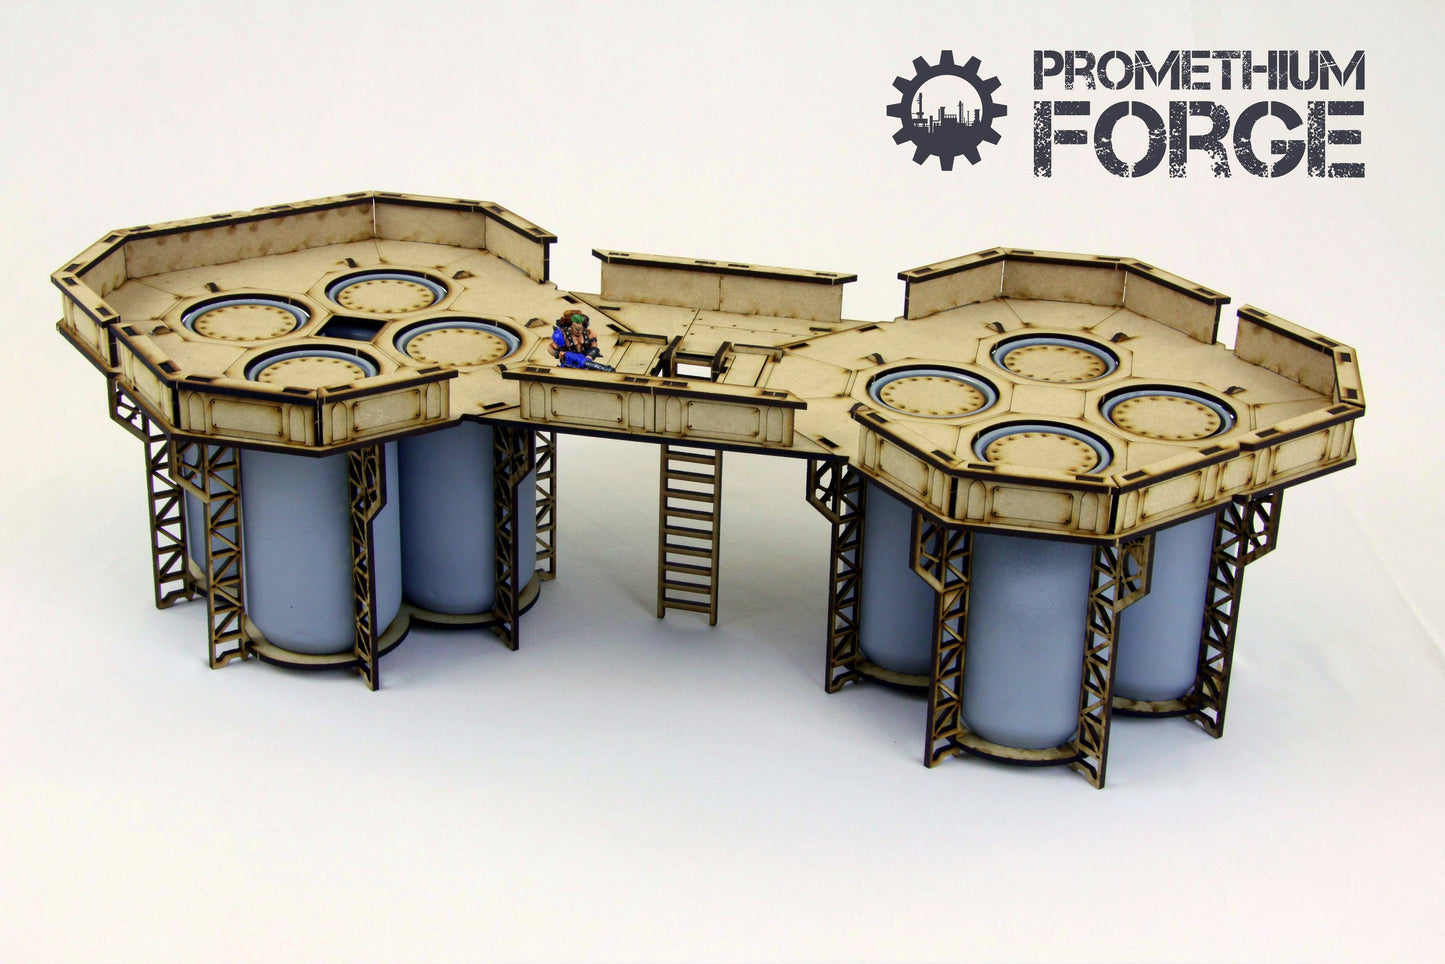 Promethium Forge: Connector Bridge